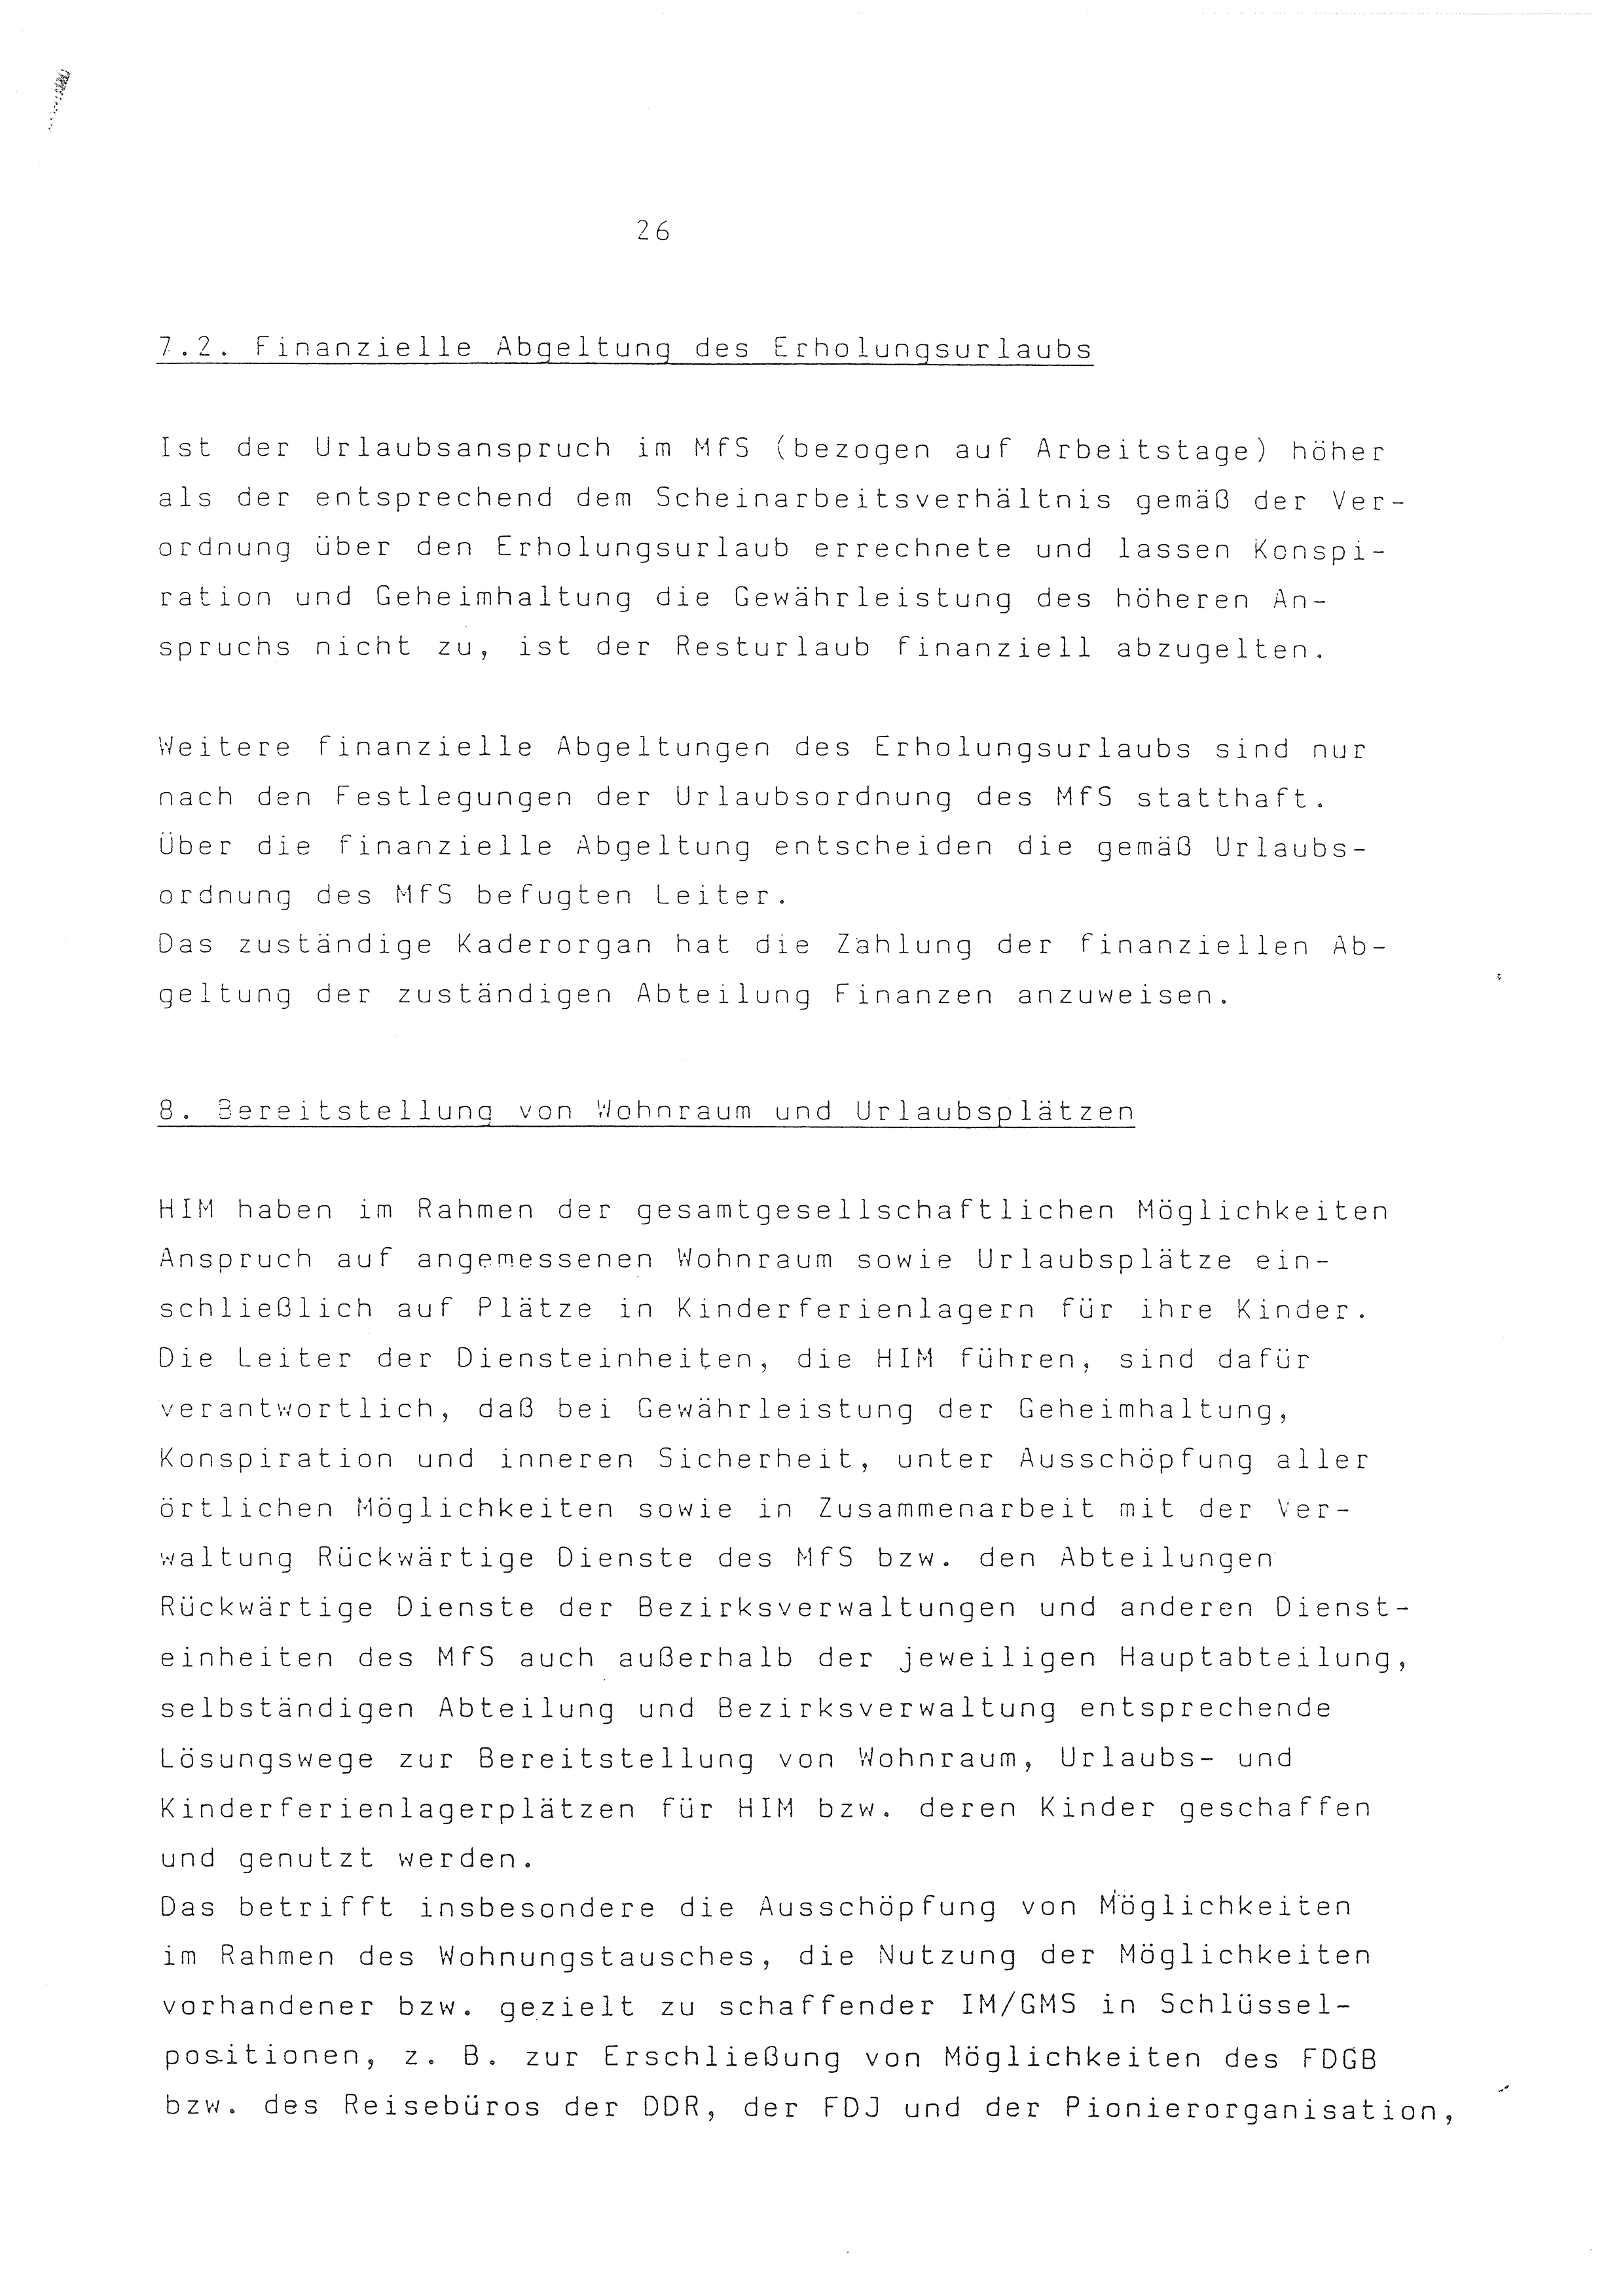 2. Durchführungsbestimmung zur Richtlinie 1/79 über die Arbeit mit hauptamtlichen Mitarbeitern des MfS (HIM), Deutsche Demokratische Republik (DDR), Ministerium für Staatssicherheit (MfS), Der Minister (Mielke), Geheime Verschlußsache (GVS) ooo8-44/86, Berlin 1986, Seite 26 (2. DB RL 1/79 DDR MfS Min. GVS ooo8-44/86 1986, S. 26)